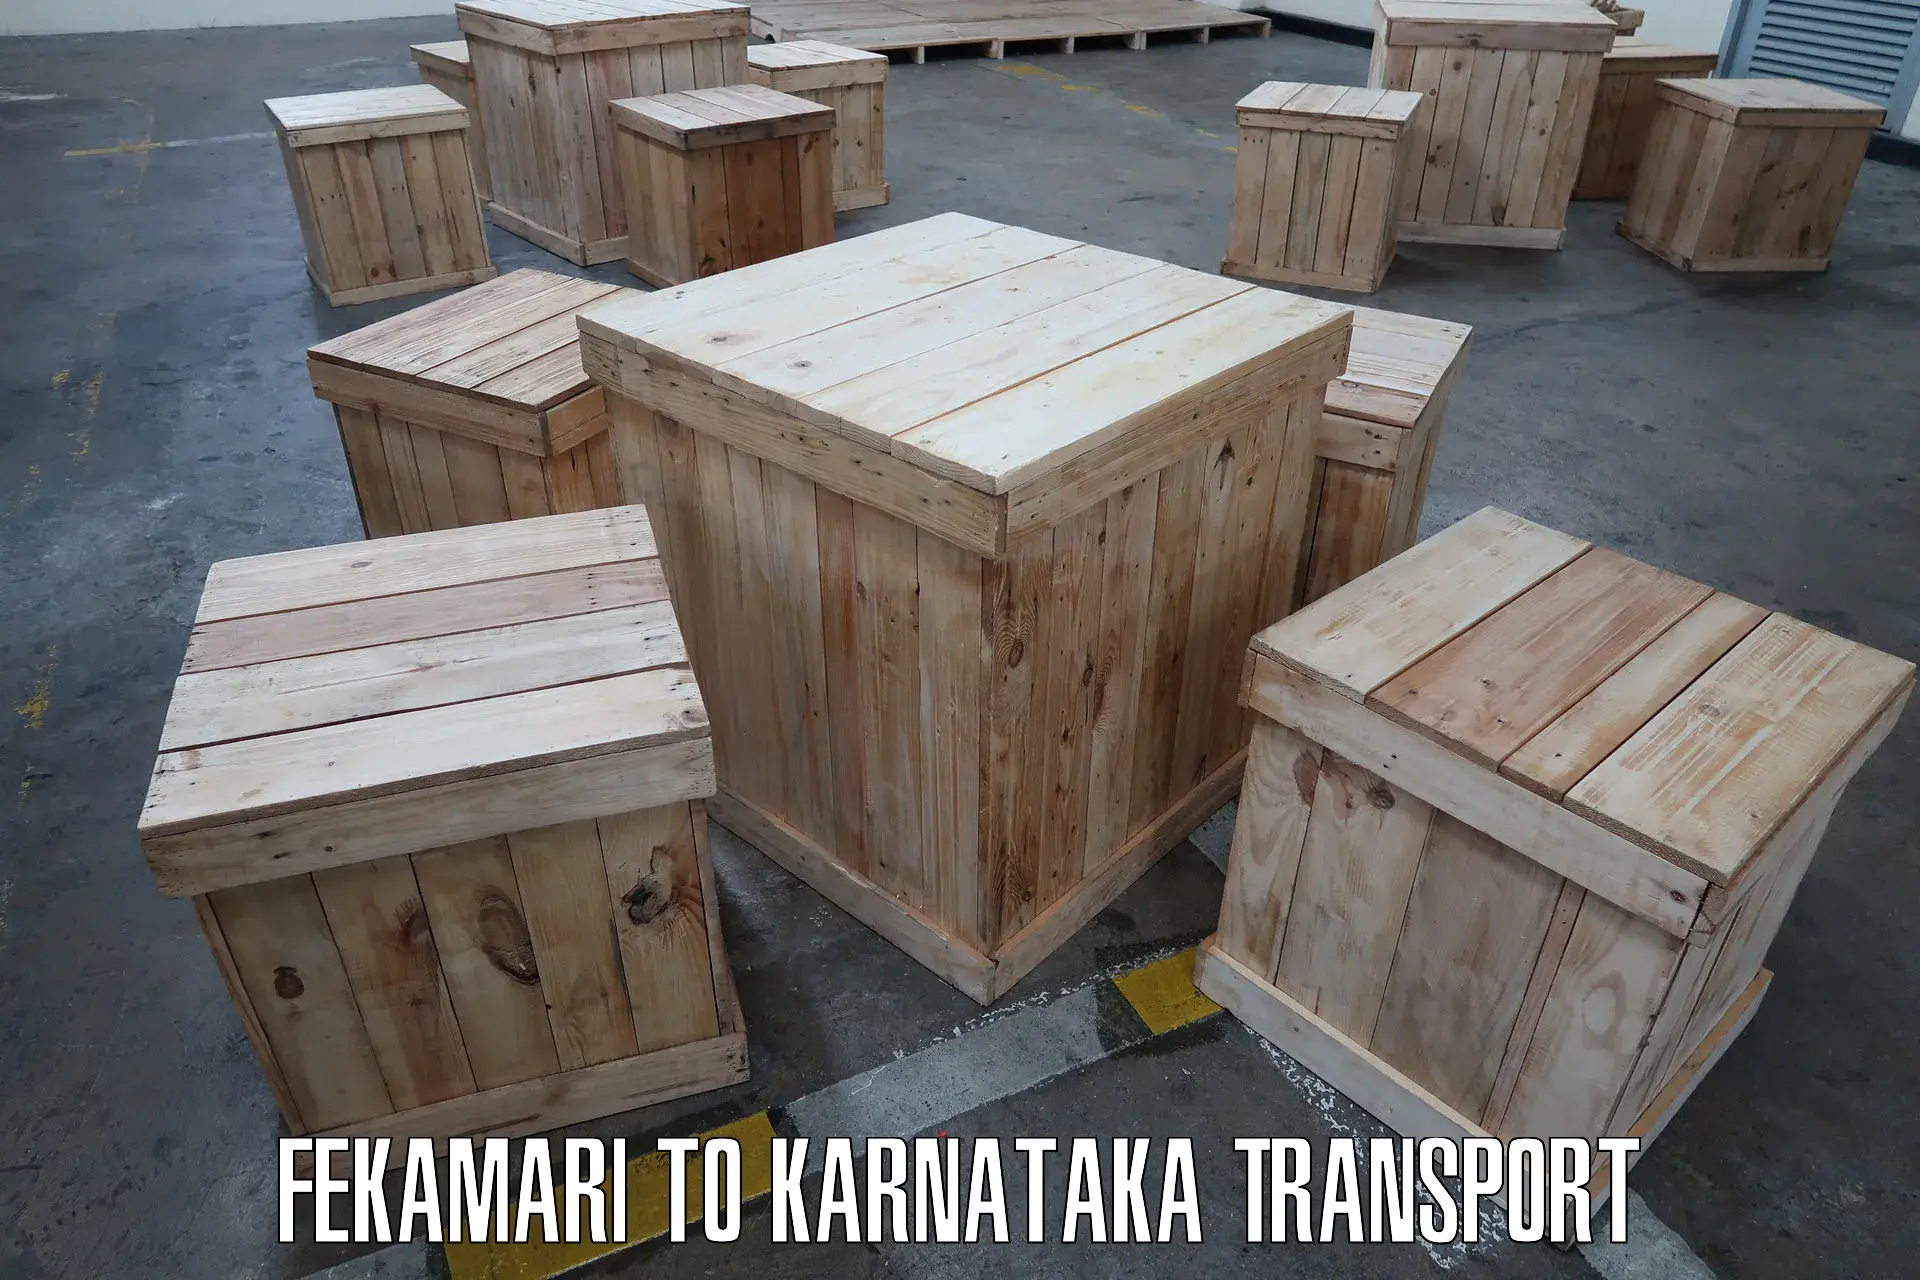 Furniture transport service Fekamari to Munavalli